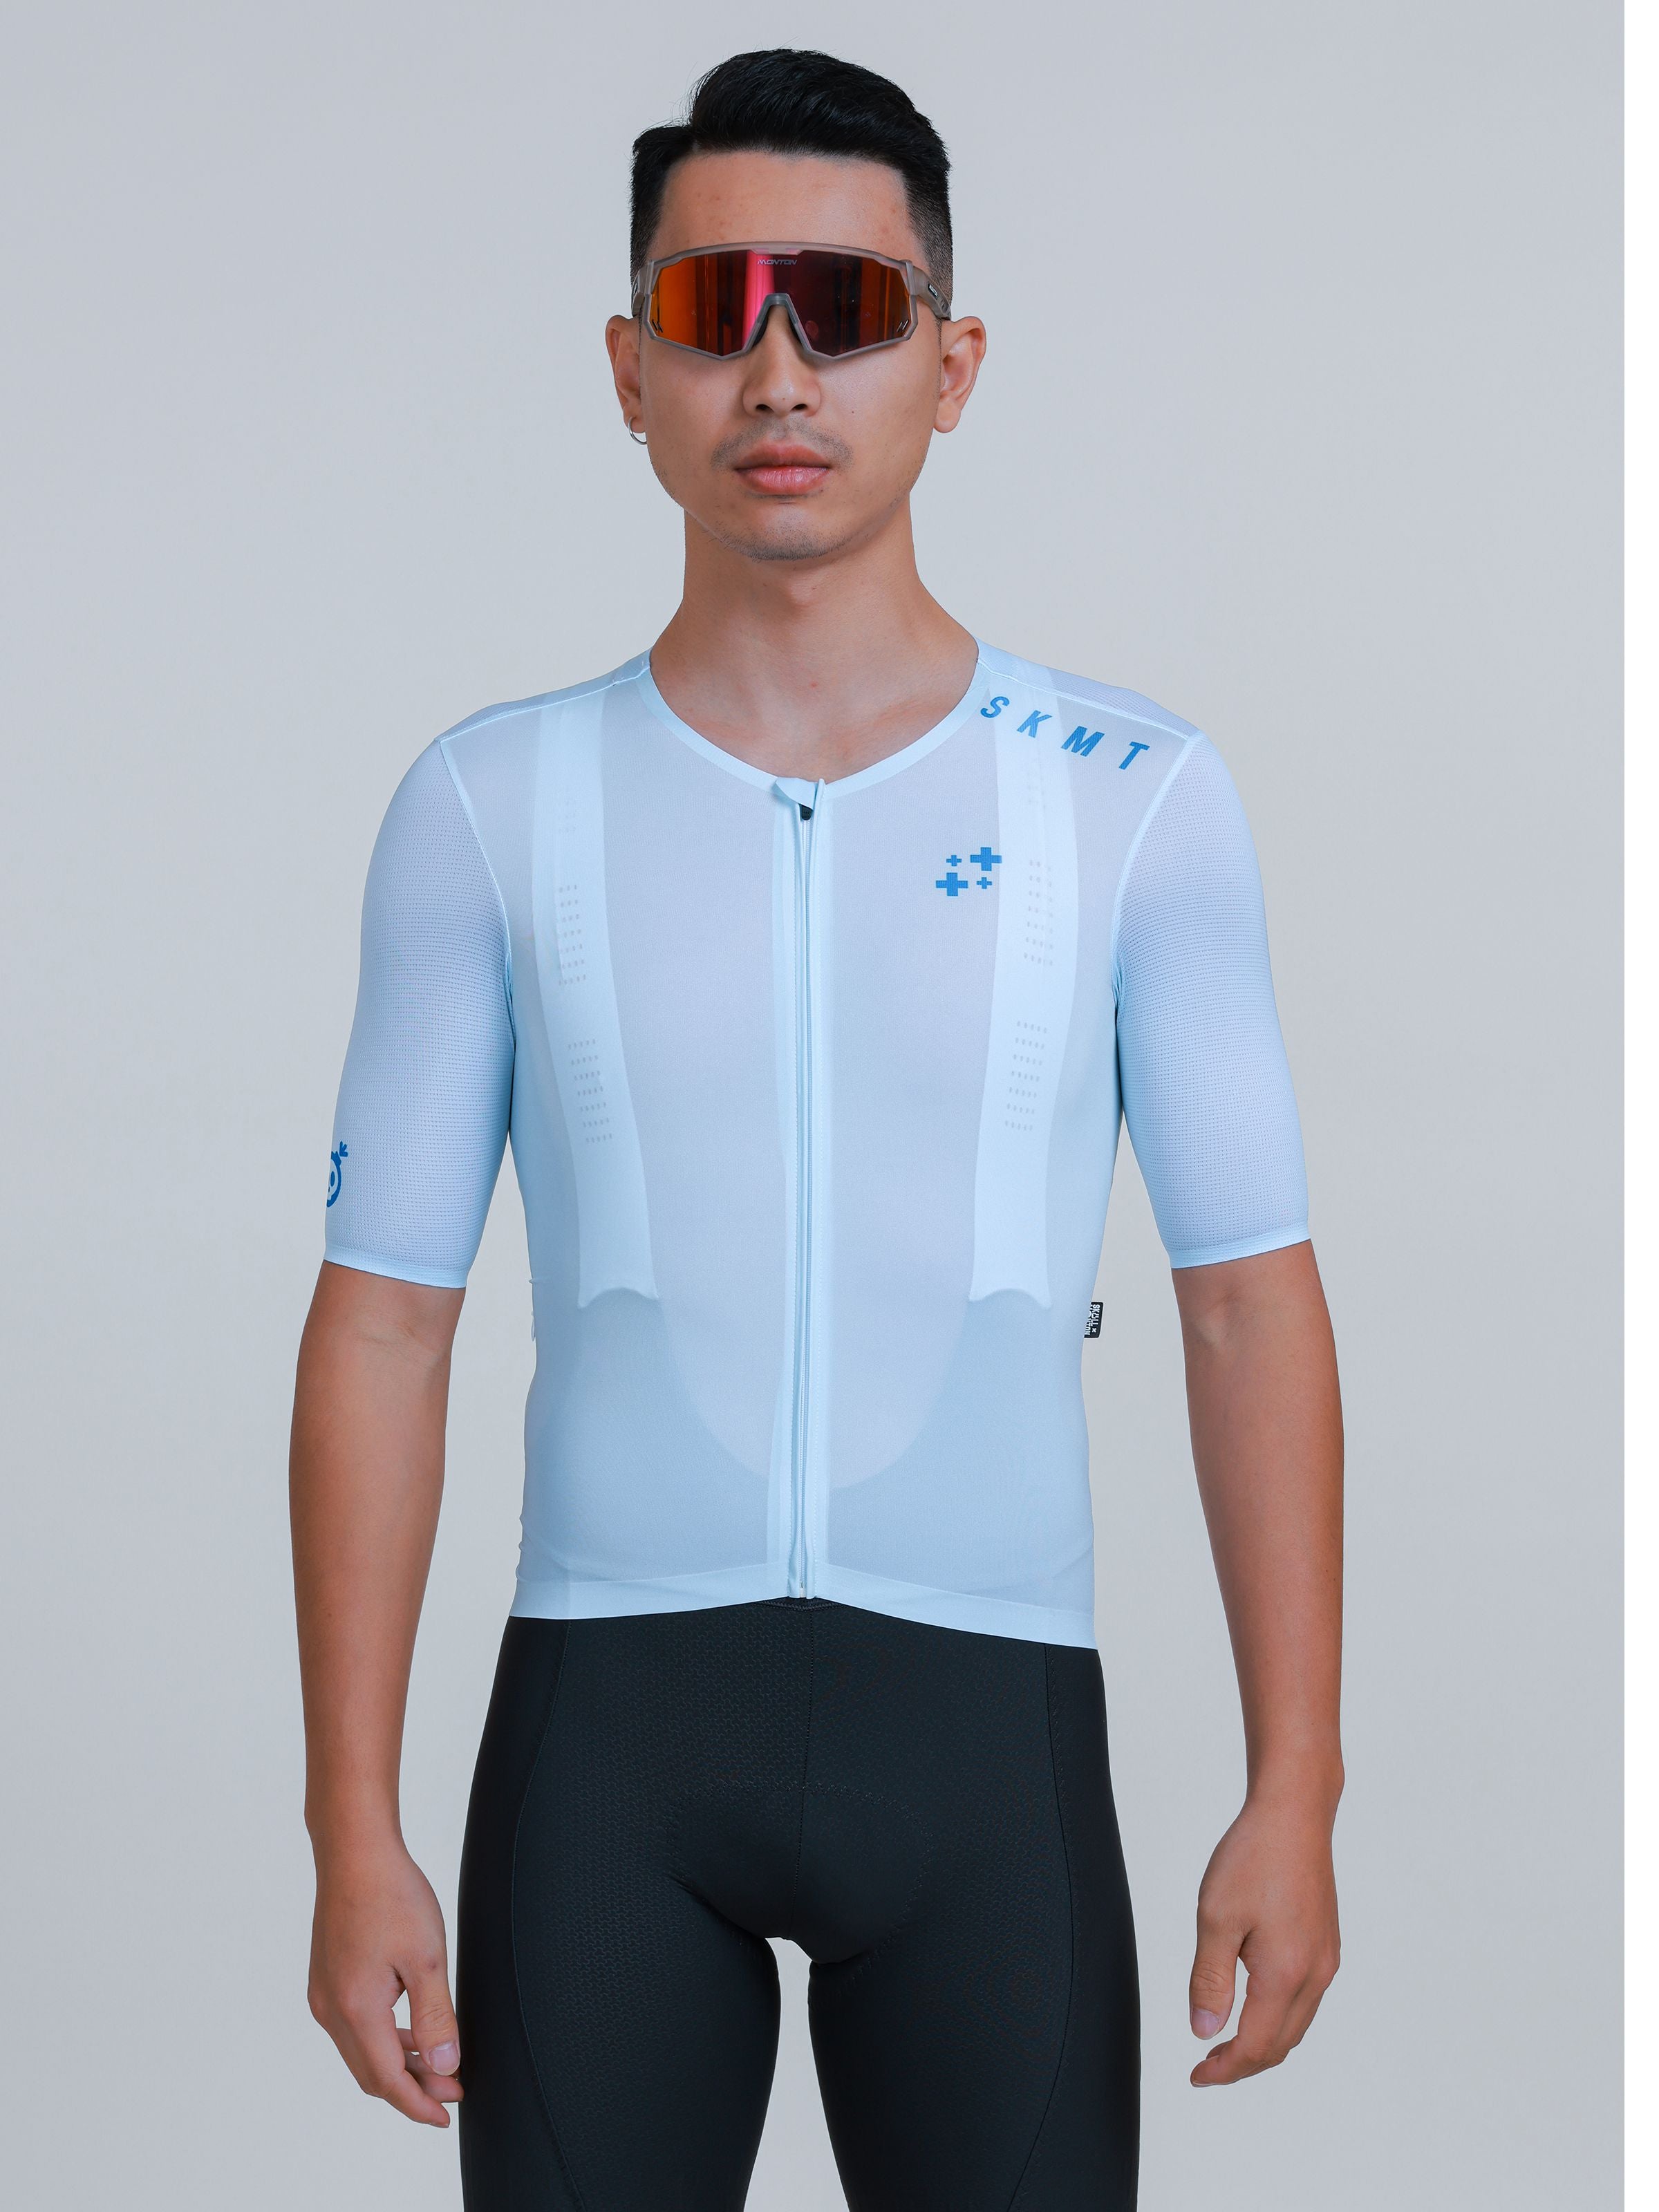 pro blue cycling jersey